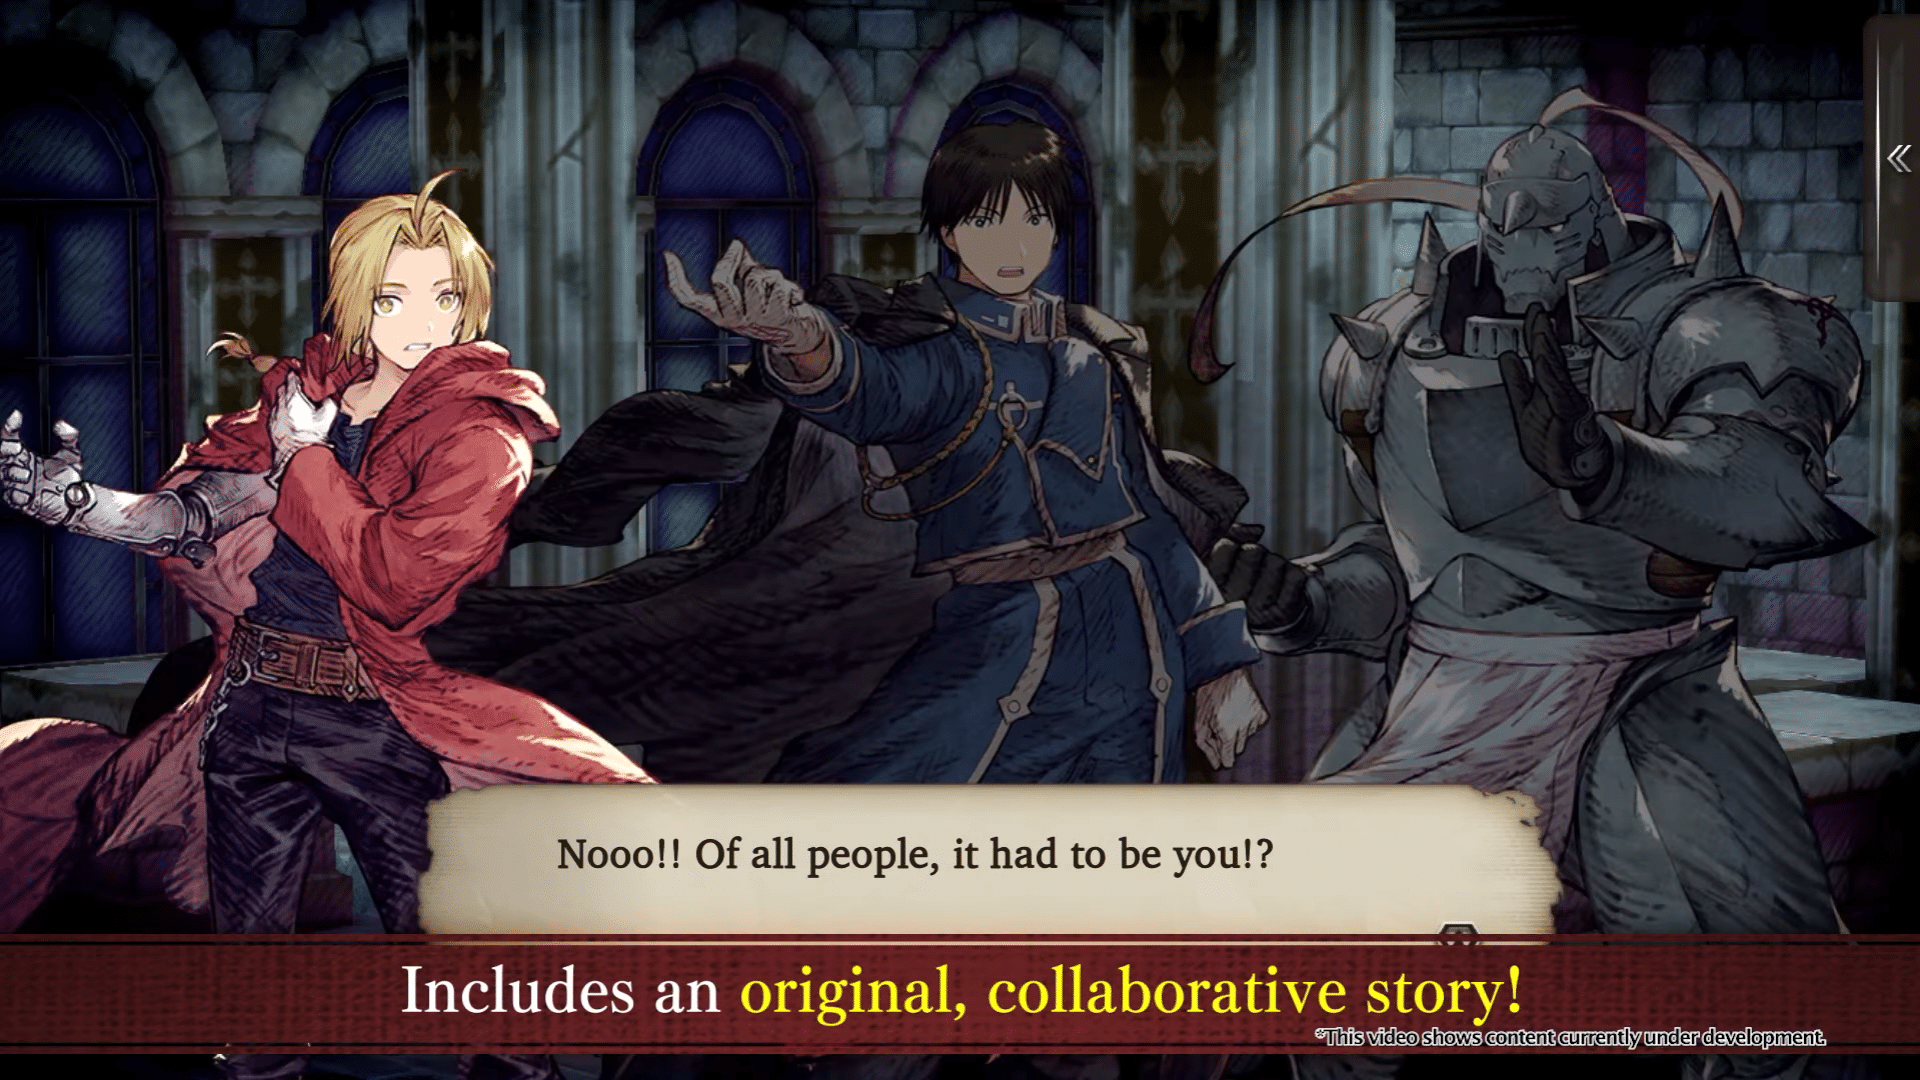 Evento de Fullmetal Alchemist já está disponível no RPG mobile Final  Fantasy Brave Exvius!